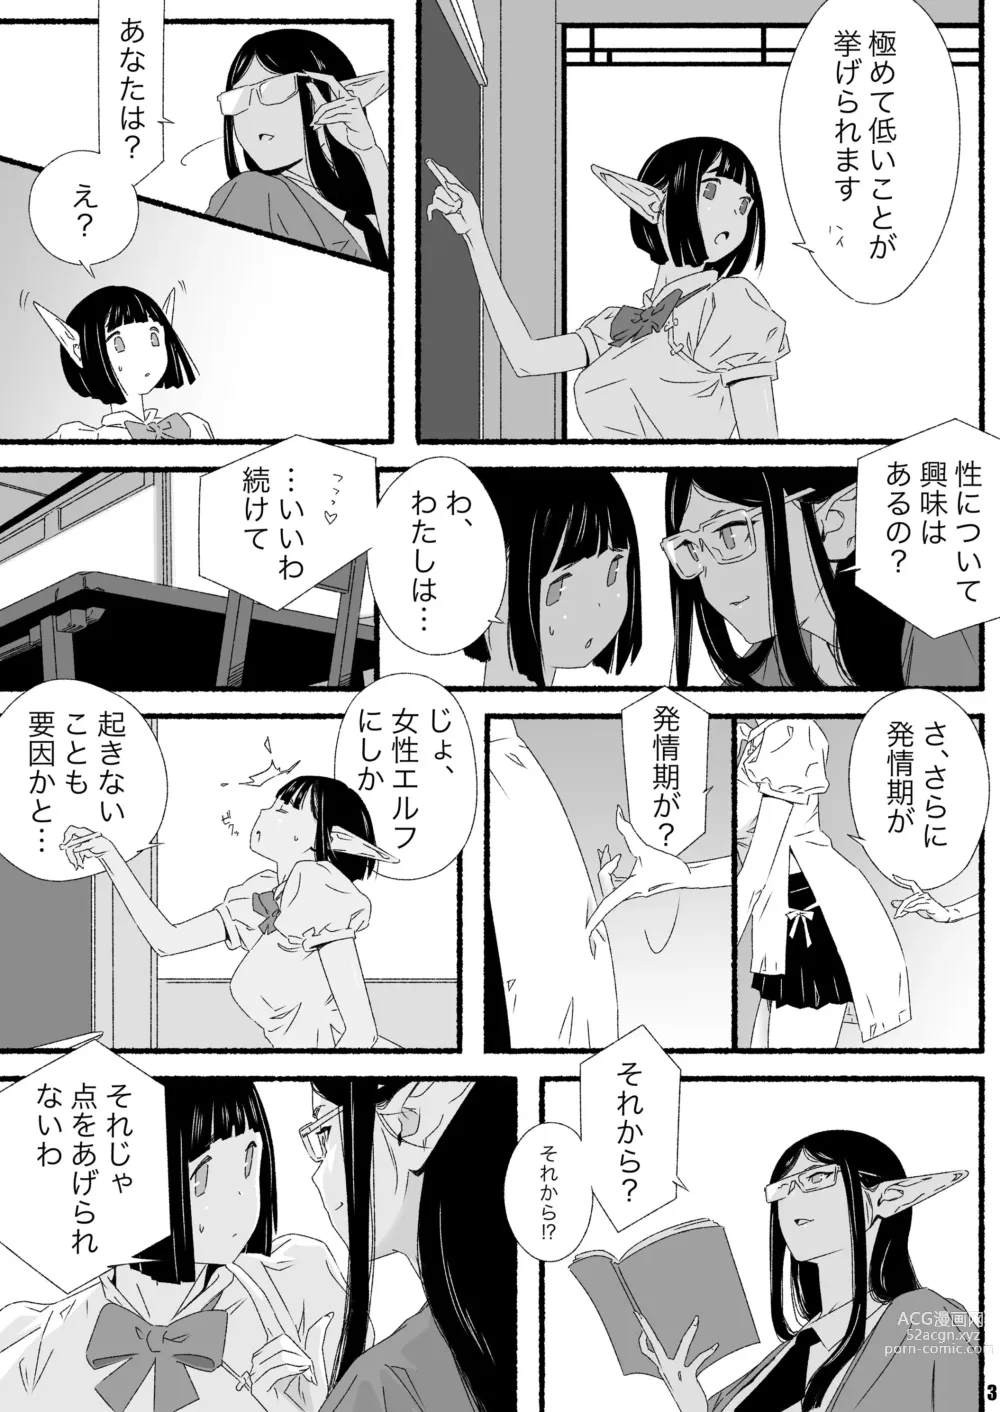 Page 3 of doujinshi Elf-chan no Shusseiritsu Teika ni Okeru Kousatsu to sono Kaiketsusaku no Jissen